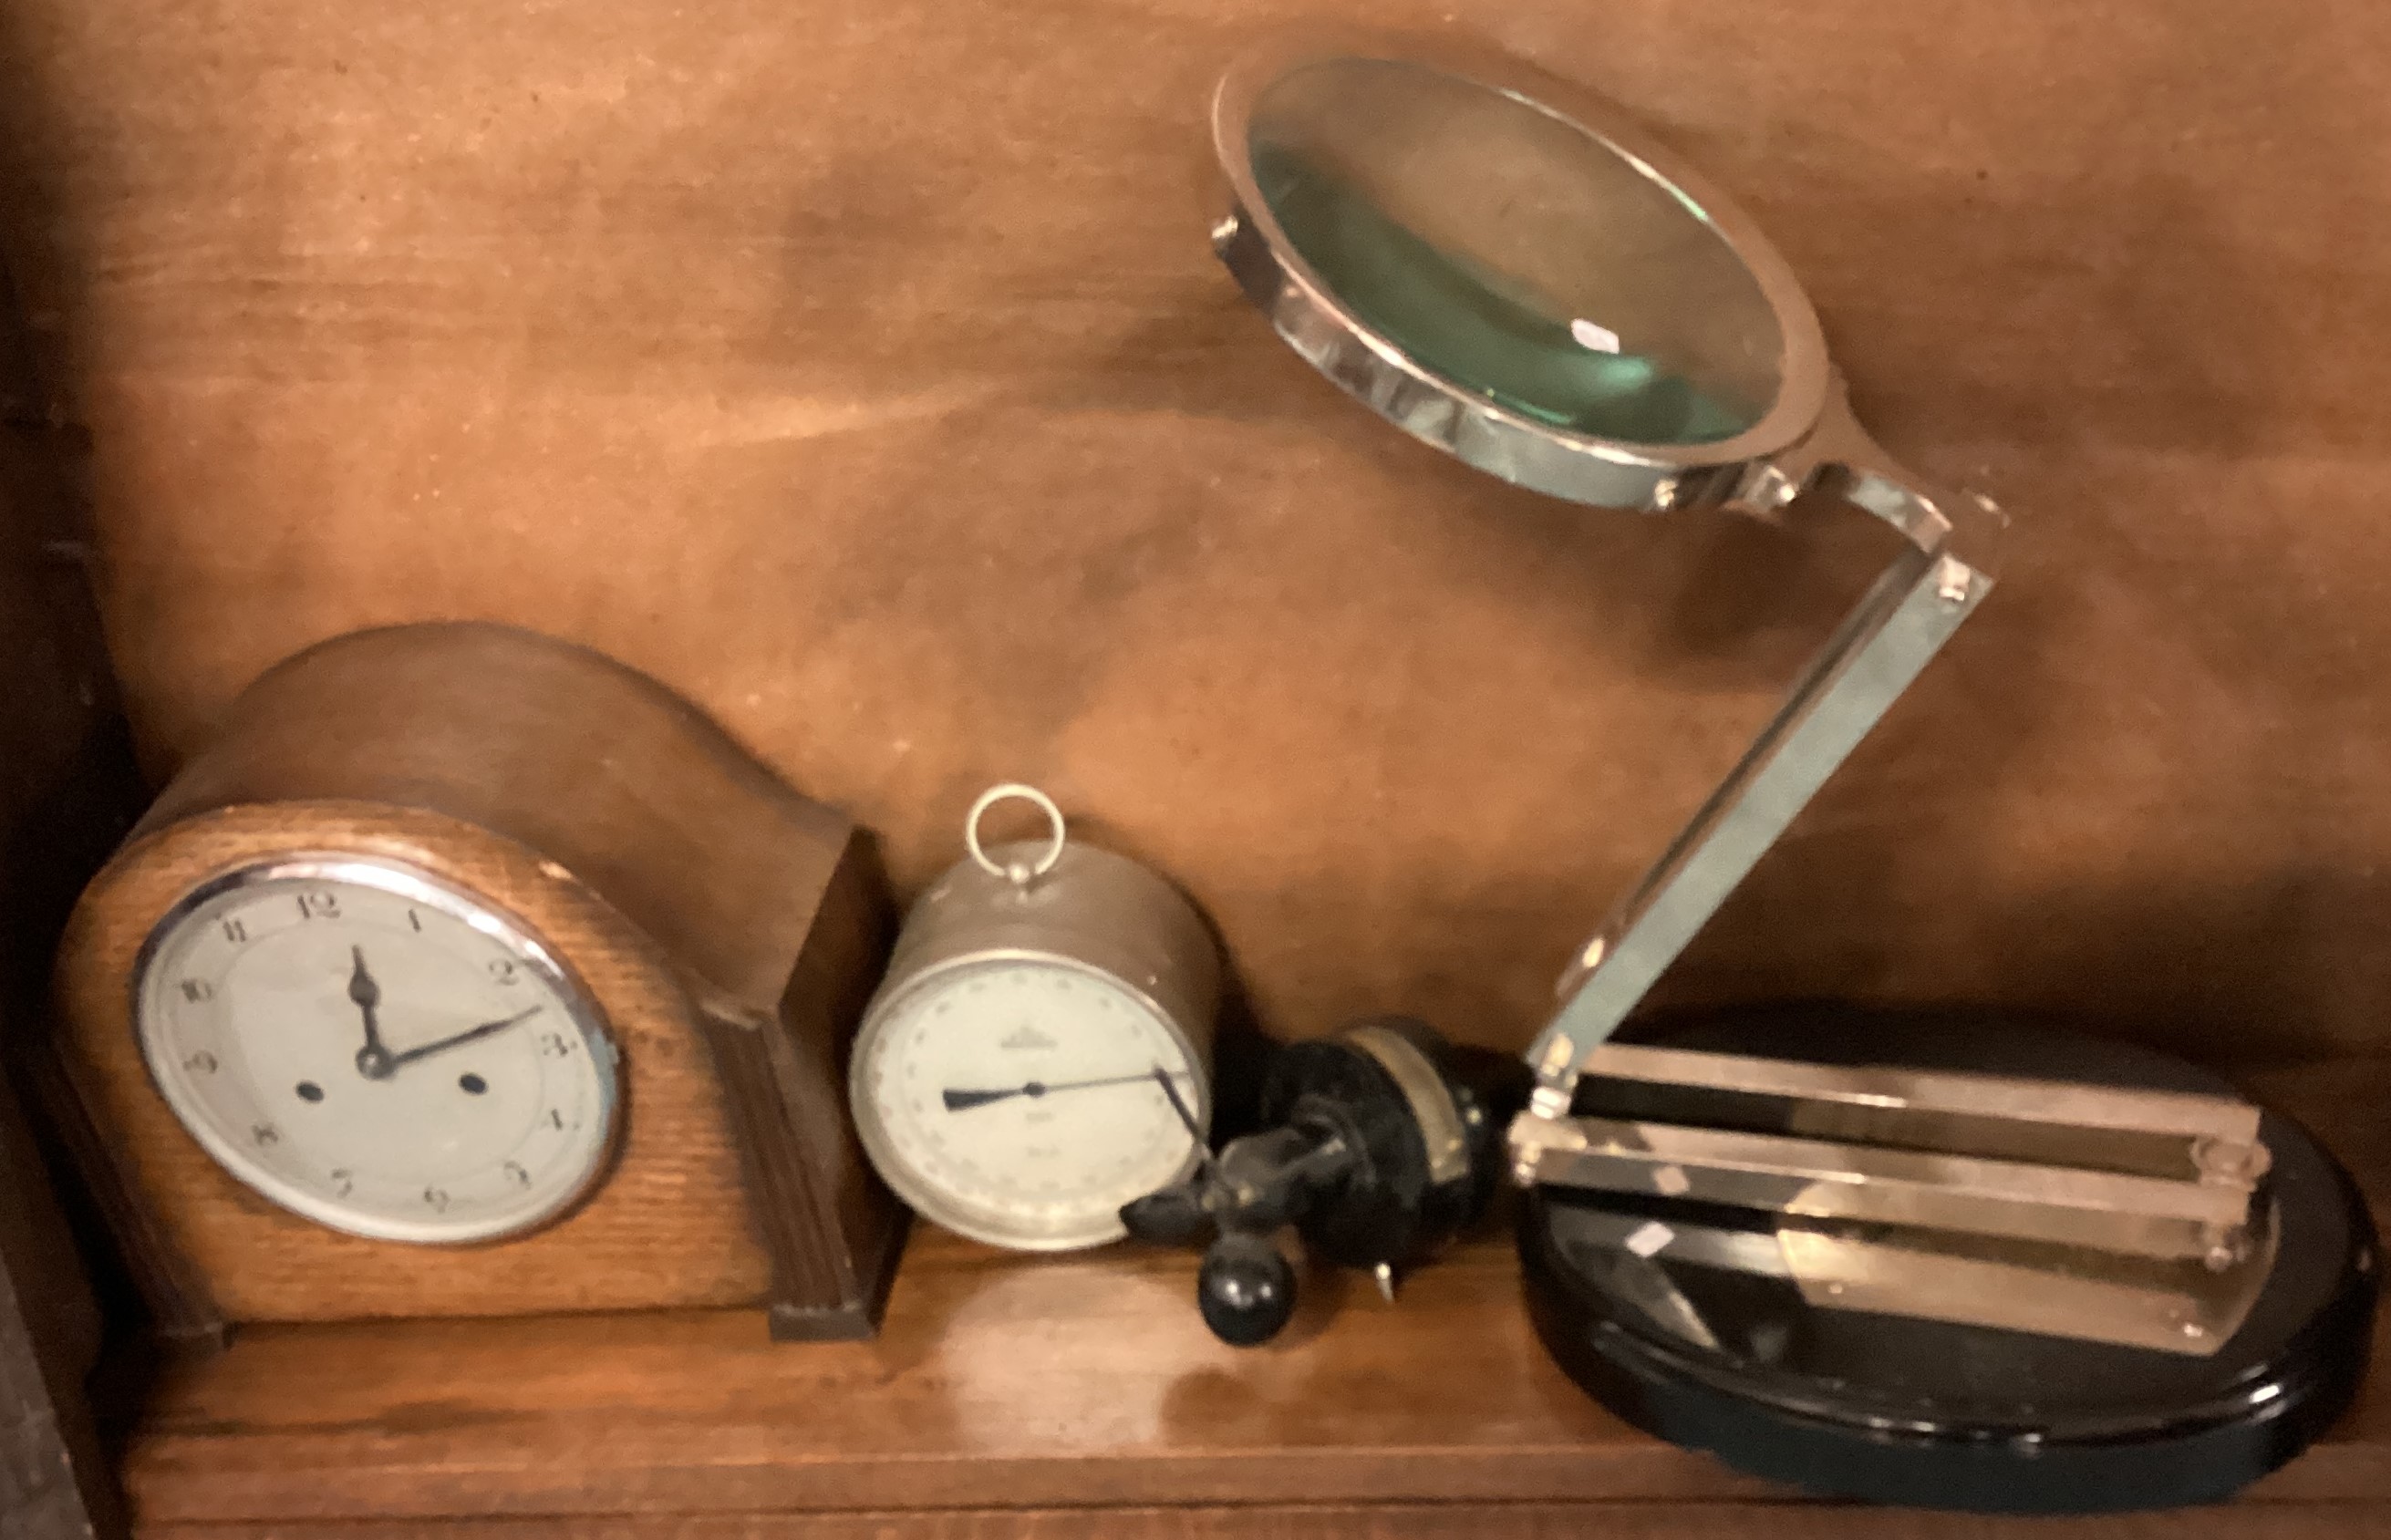 A large magnifier, clock etc.